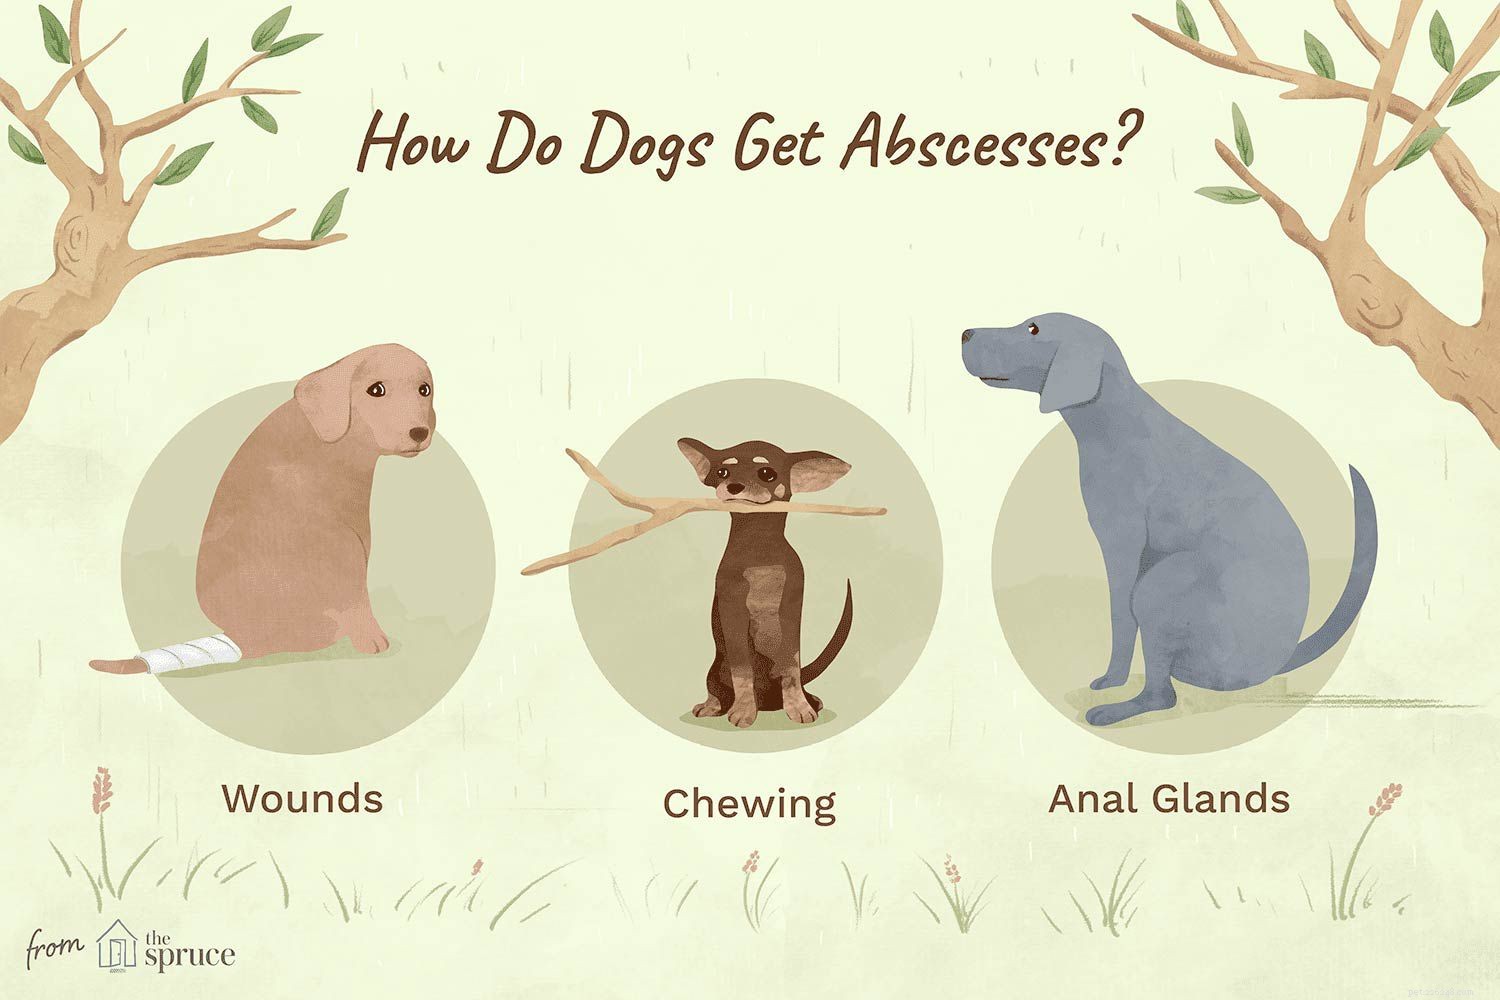 Het identificeren en behandelen van abcessen bij honden